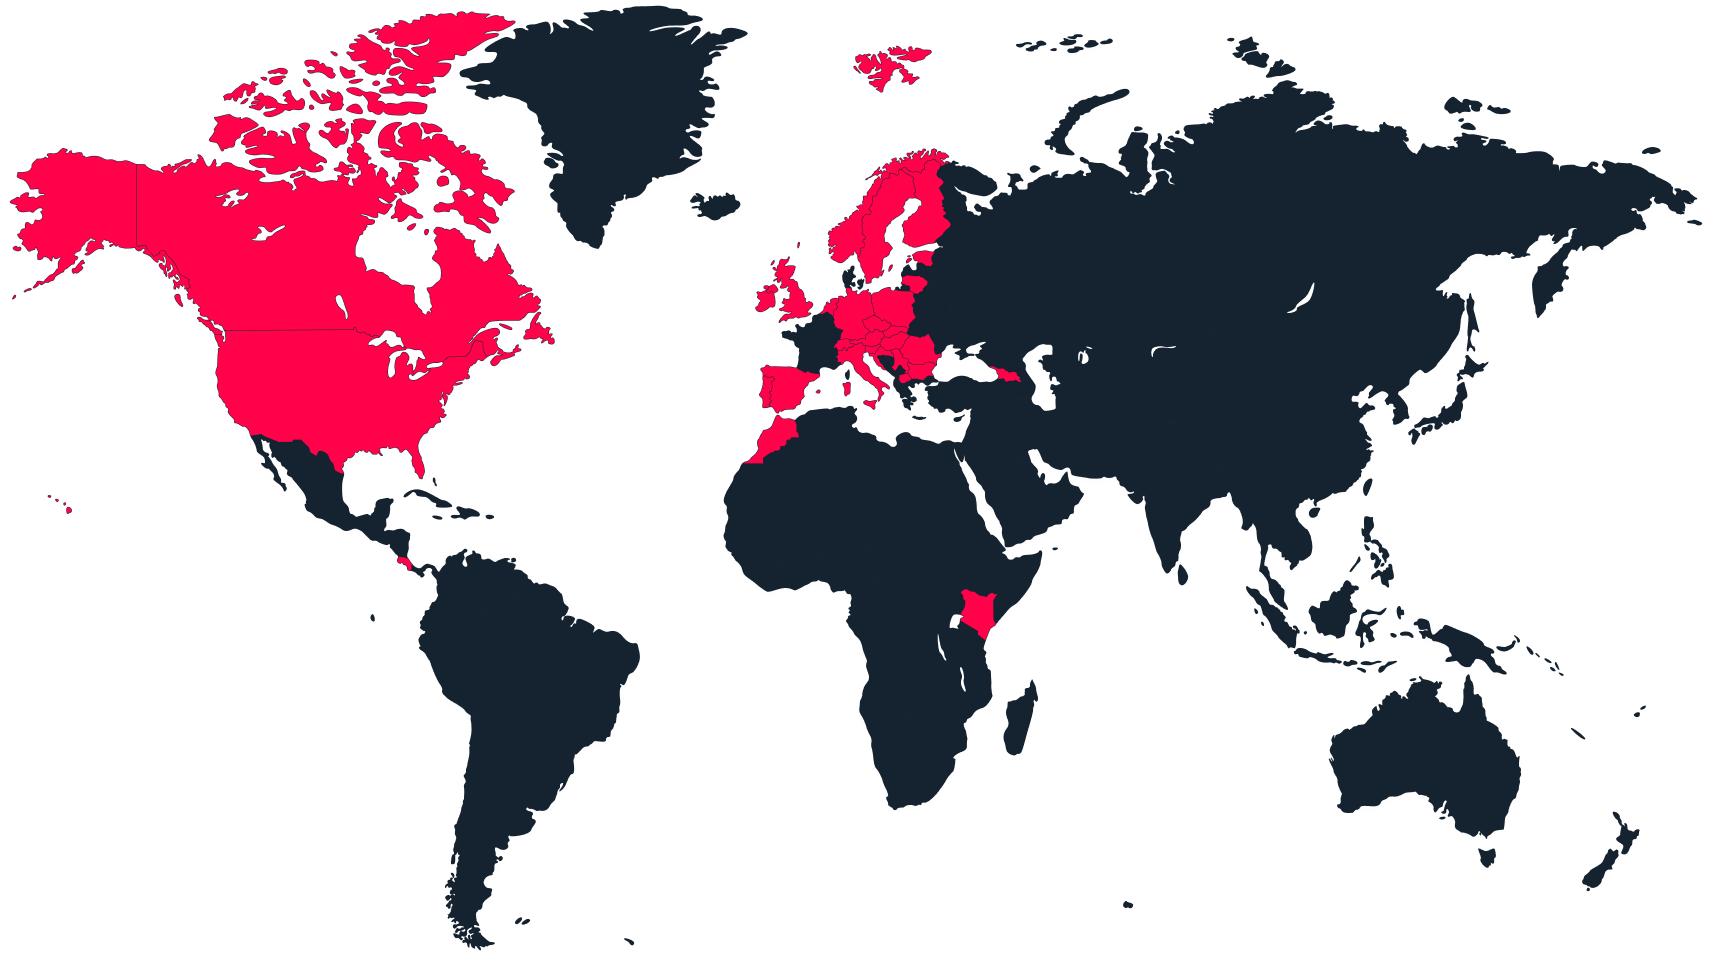 Kırmızı ile işaretlenmiş aktif ülkelerin bulunduğu bir dünya haritası